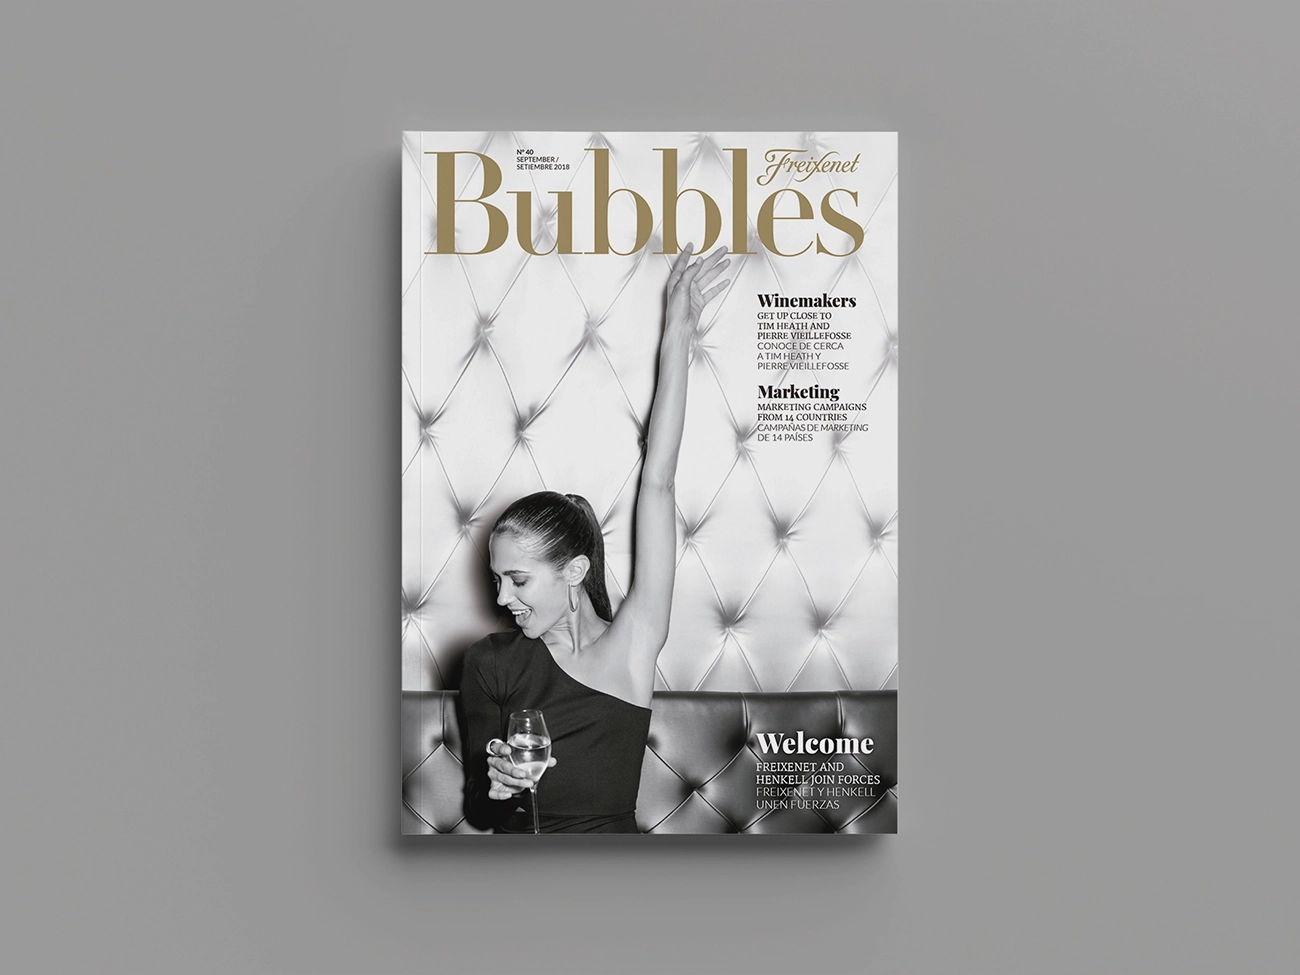 Diseño editorial, diseño de cubierta y maquetación de la revista Bubbles de Freixenet. Cubierta